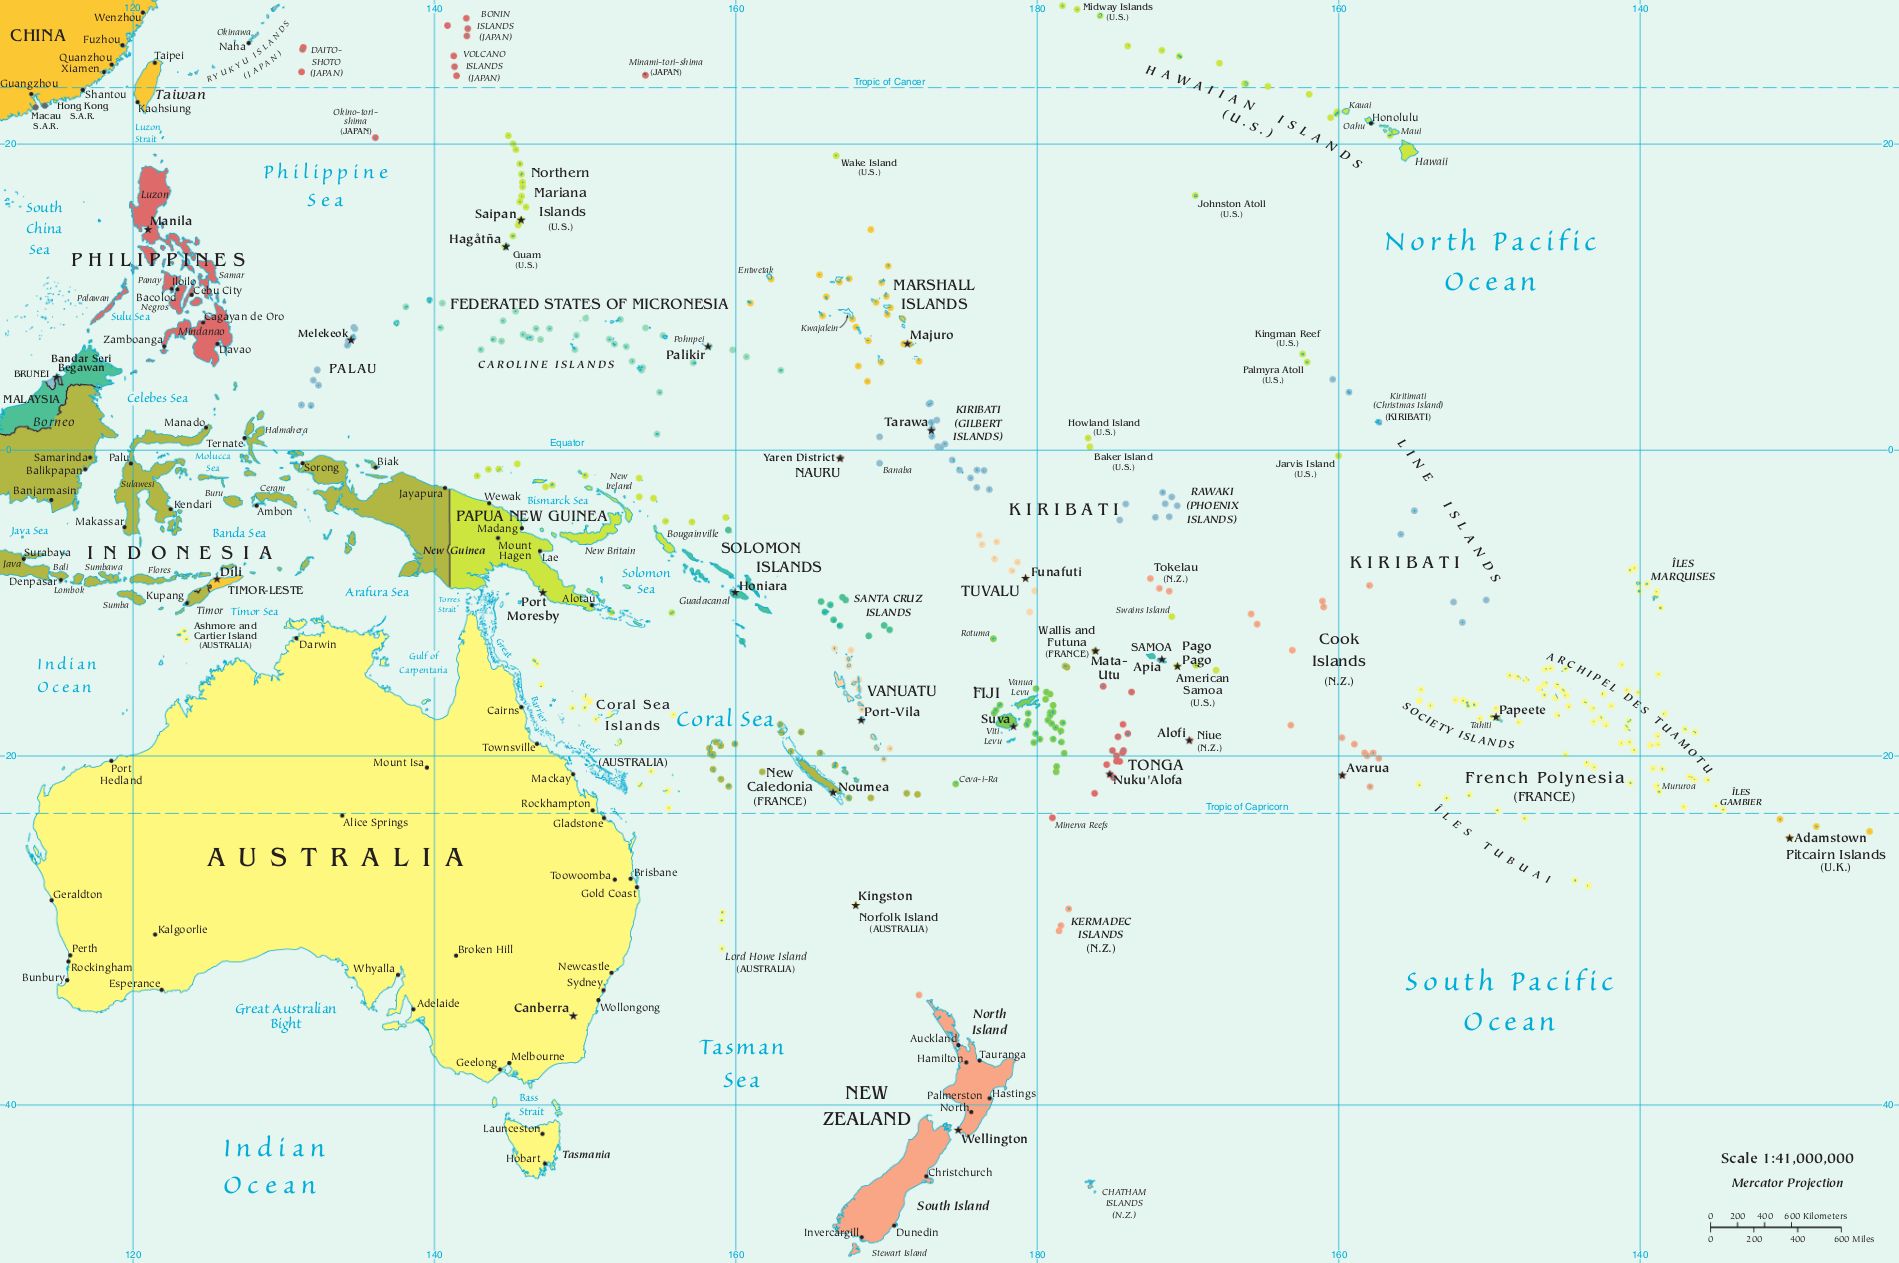 Mapa-múndi: completo com países, continentes e oceanos